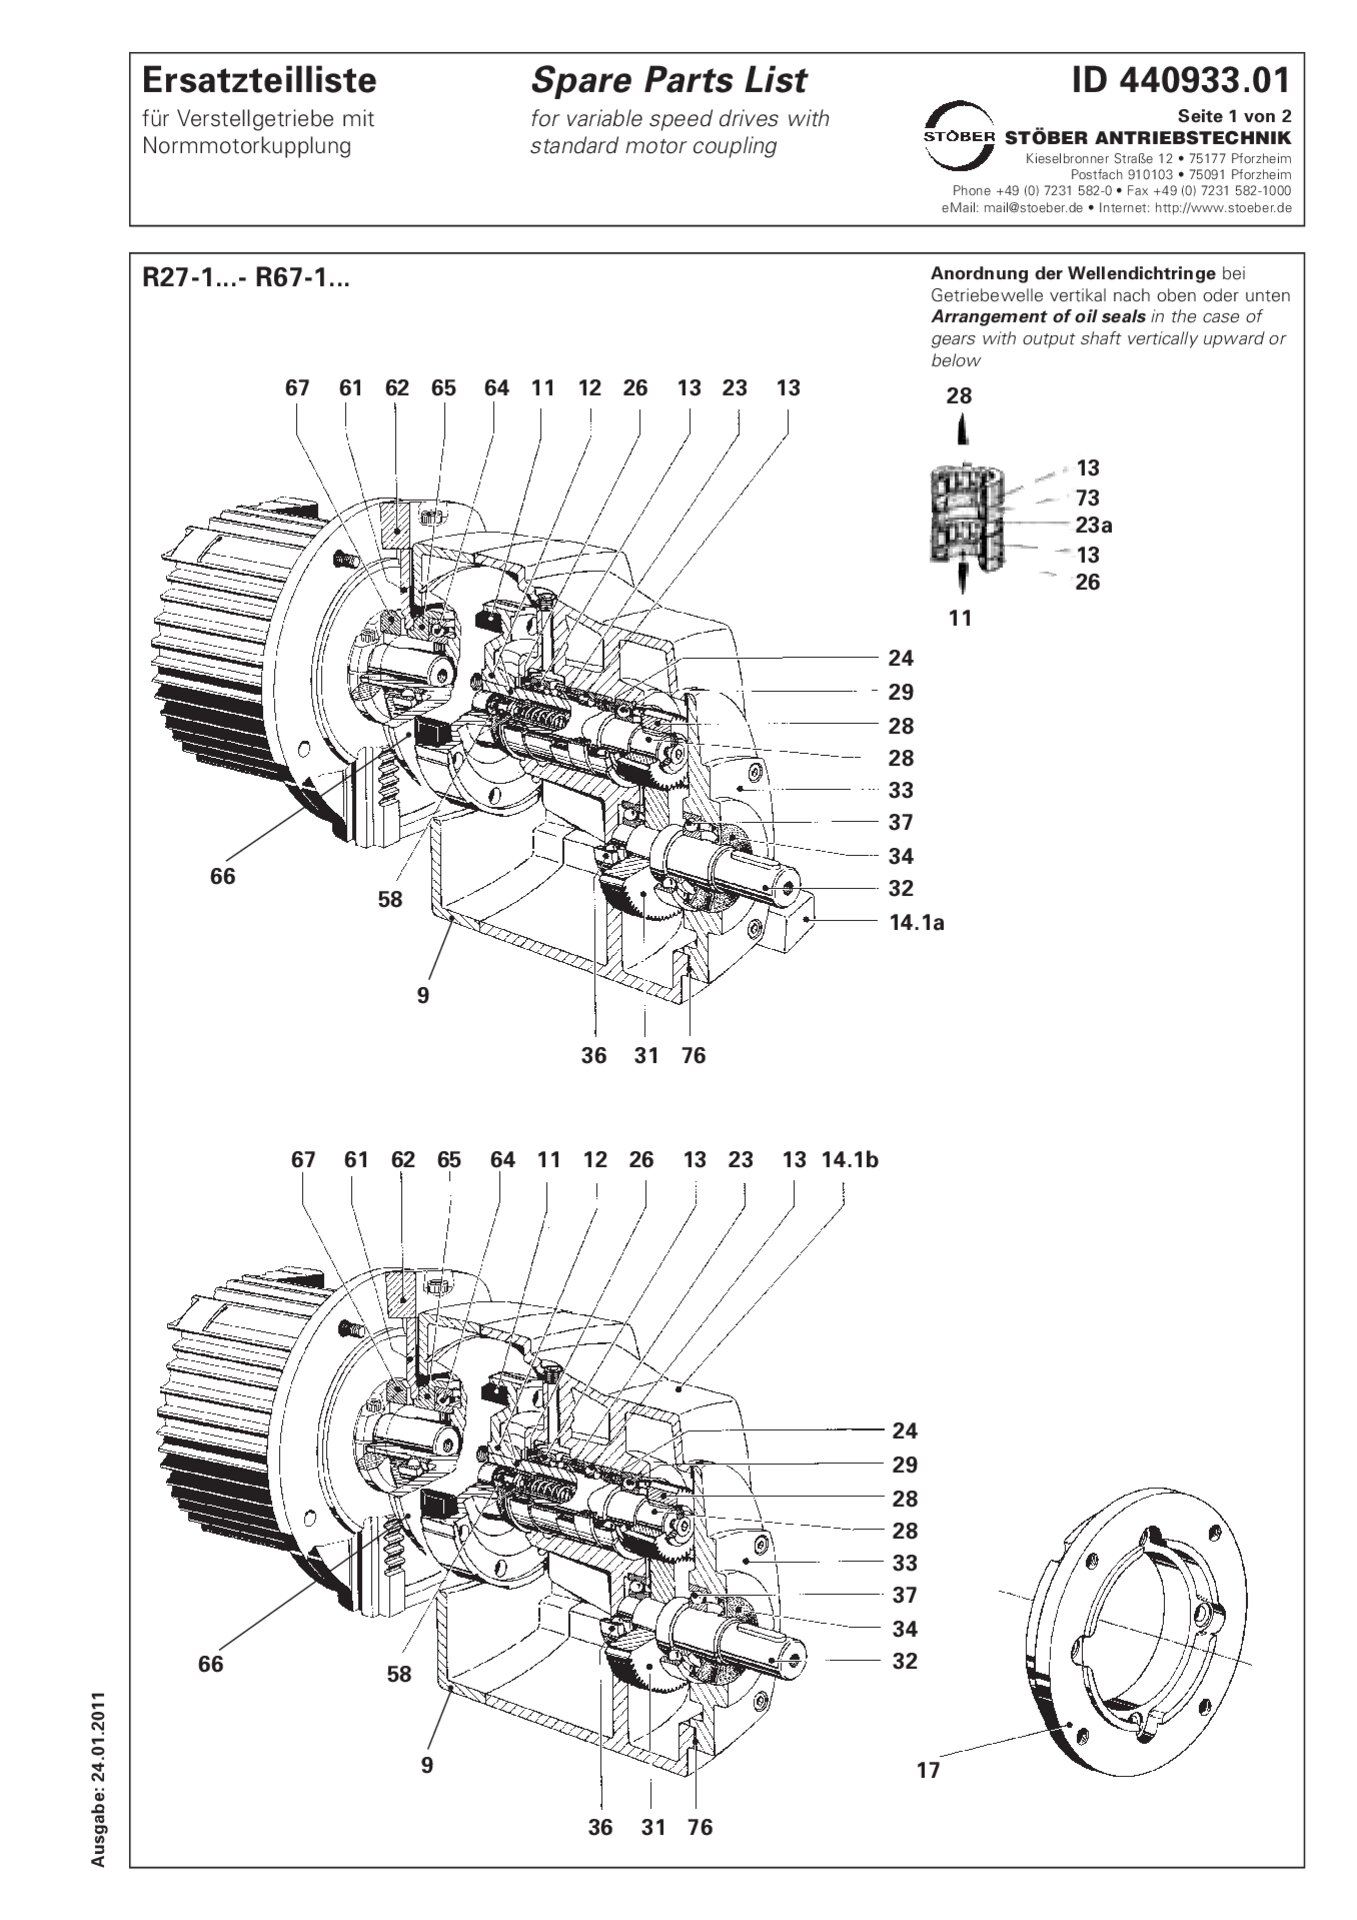 Liste des pièces de rechange R27-1/R37-1/R47-1/R57-1/R67-1 avec accouplement de moteur standard